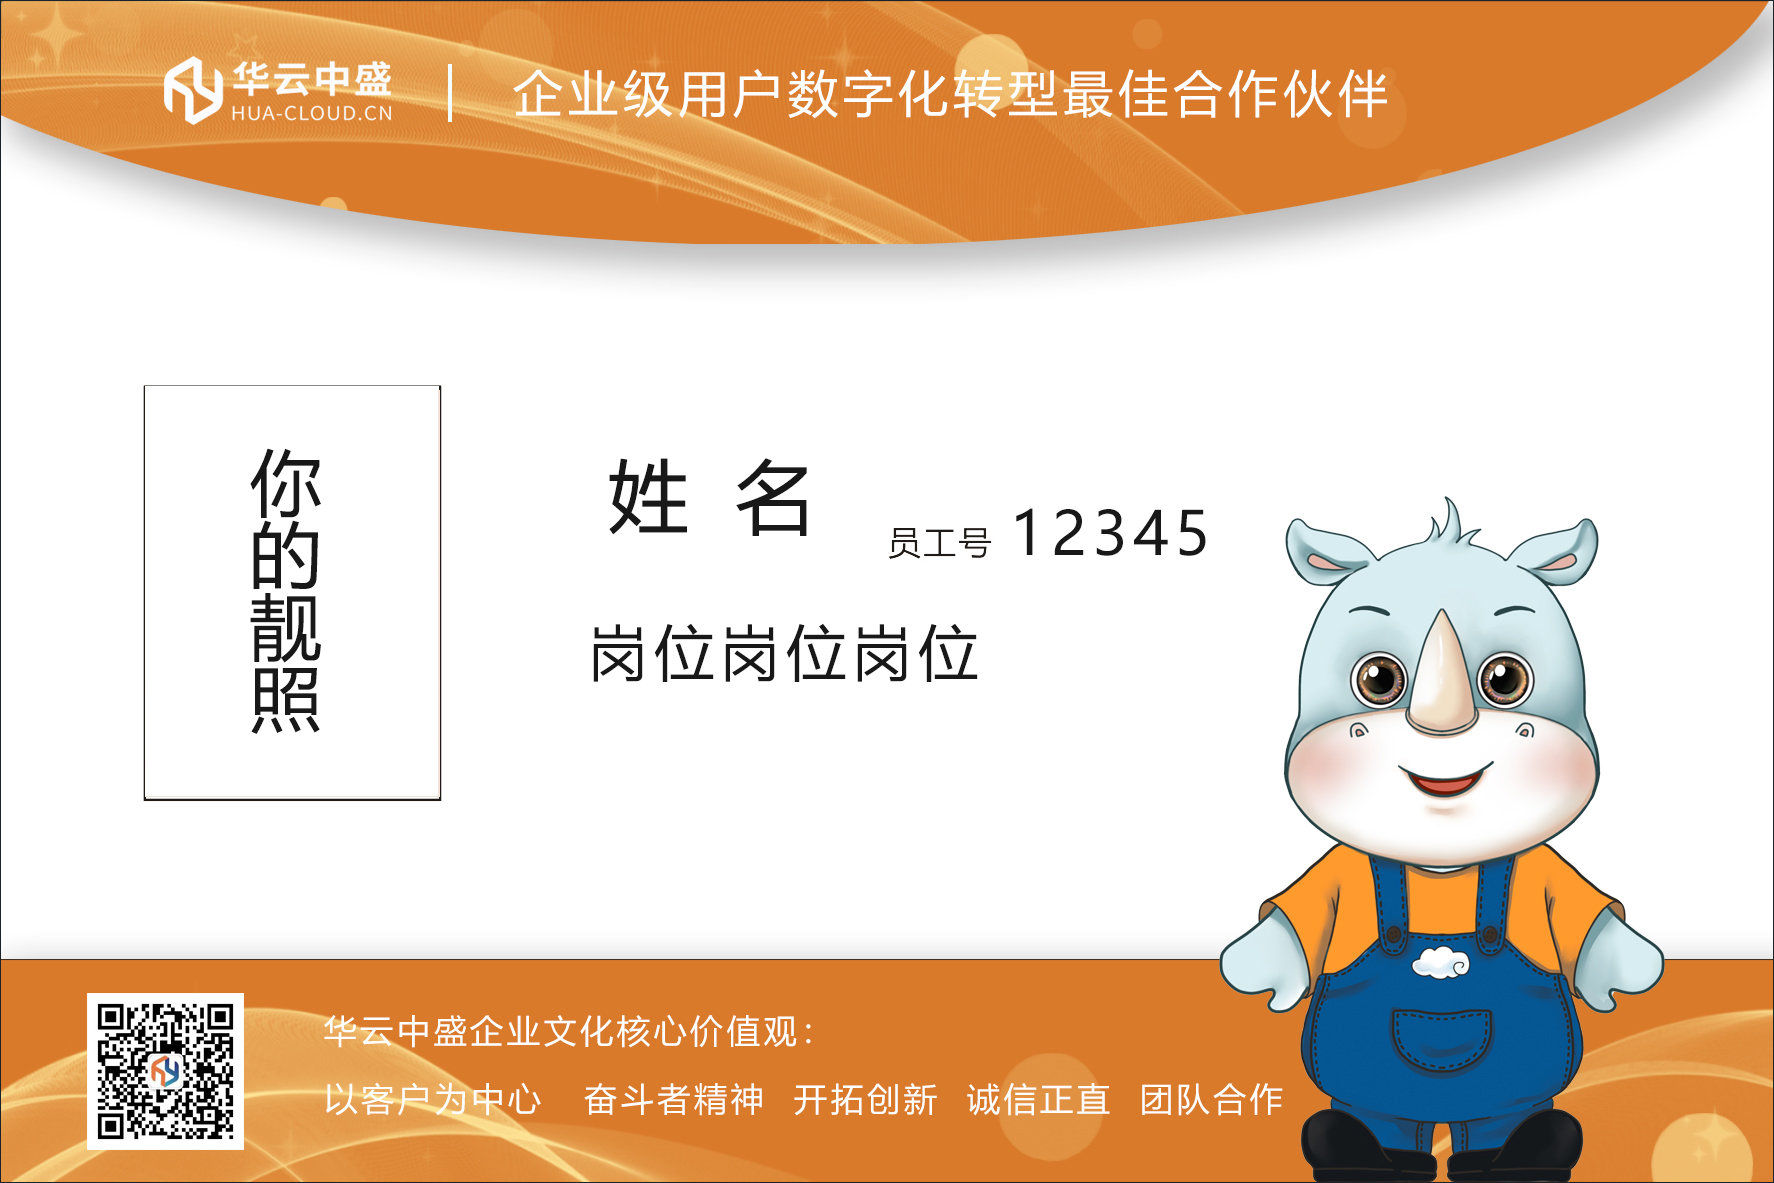 华云有自己的吉祥物了！新葡的京集团350vip8888企业形象识别系统（CIS）发布